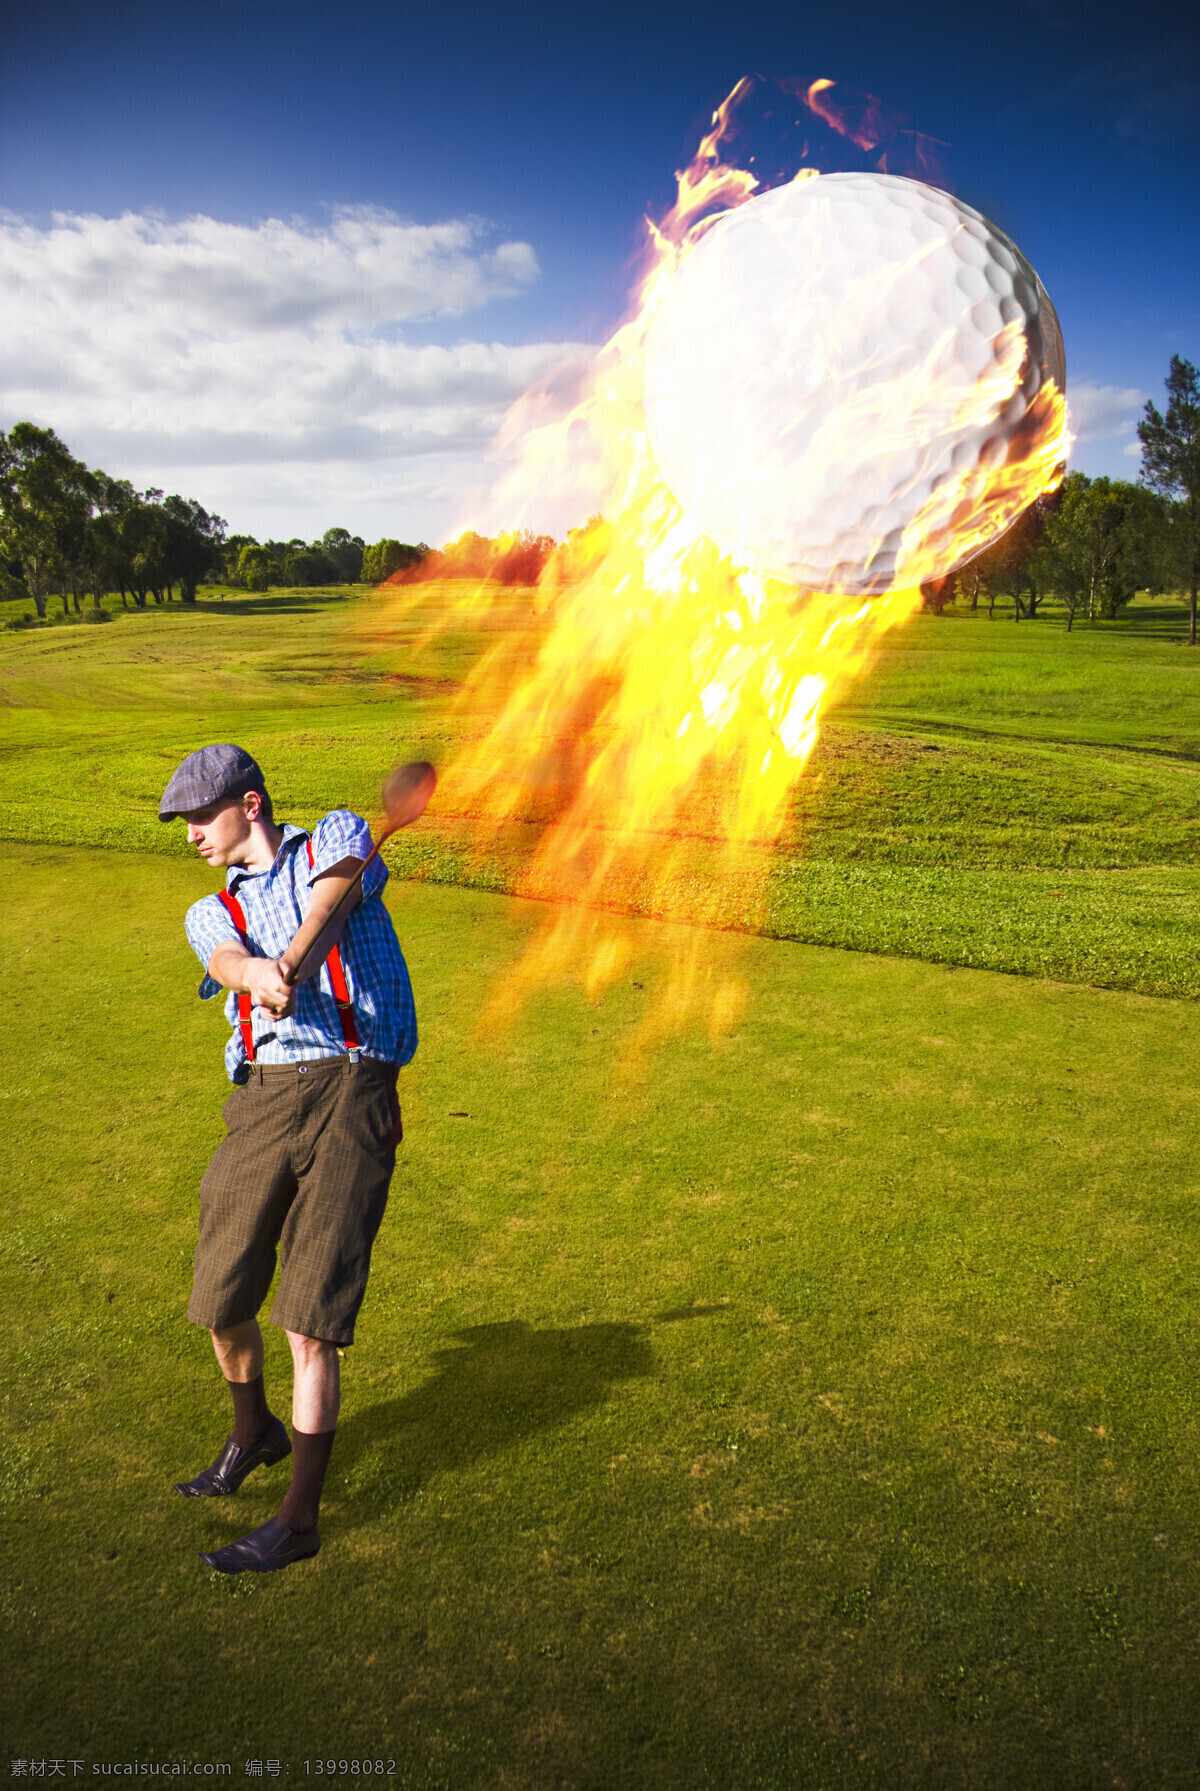 高尔夫球 外国 男士 燃烧 火苗 火焰 外国男士 休闲贵族运动 体育运动 生活人物 人物图片